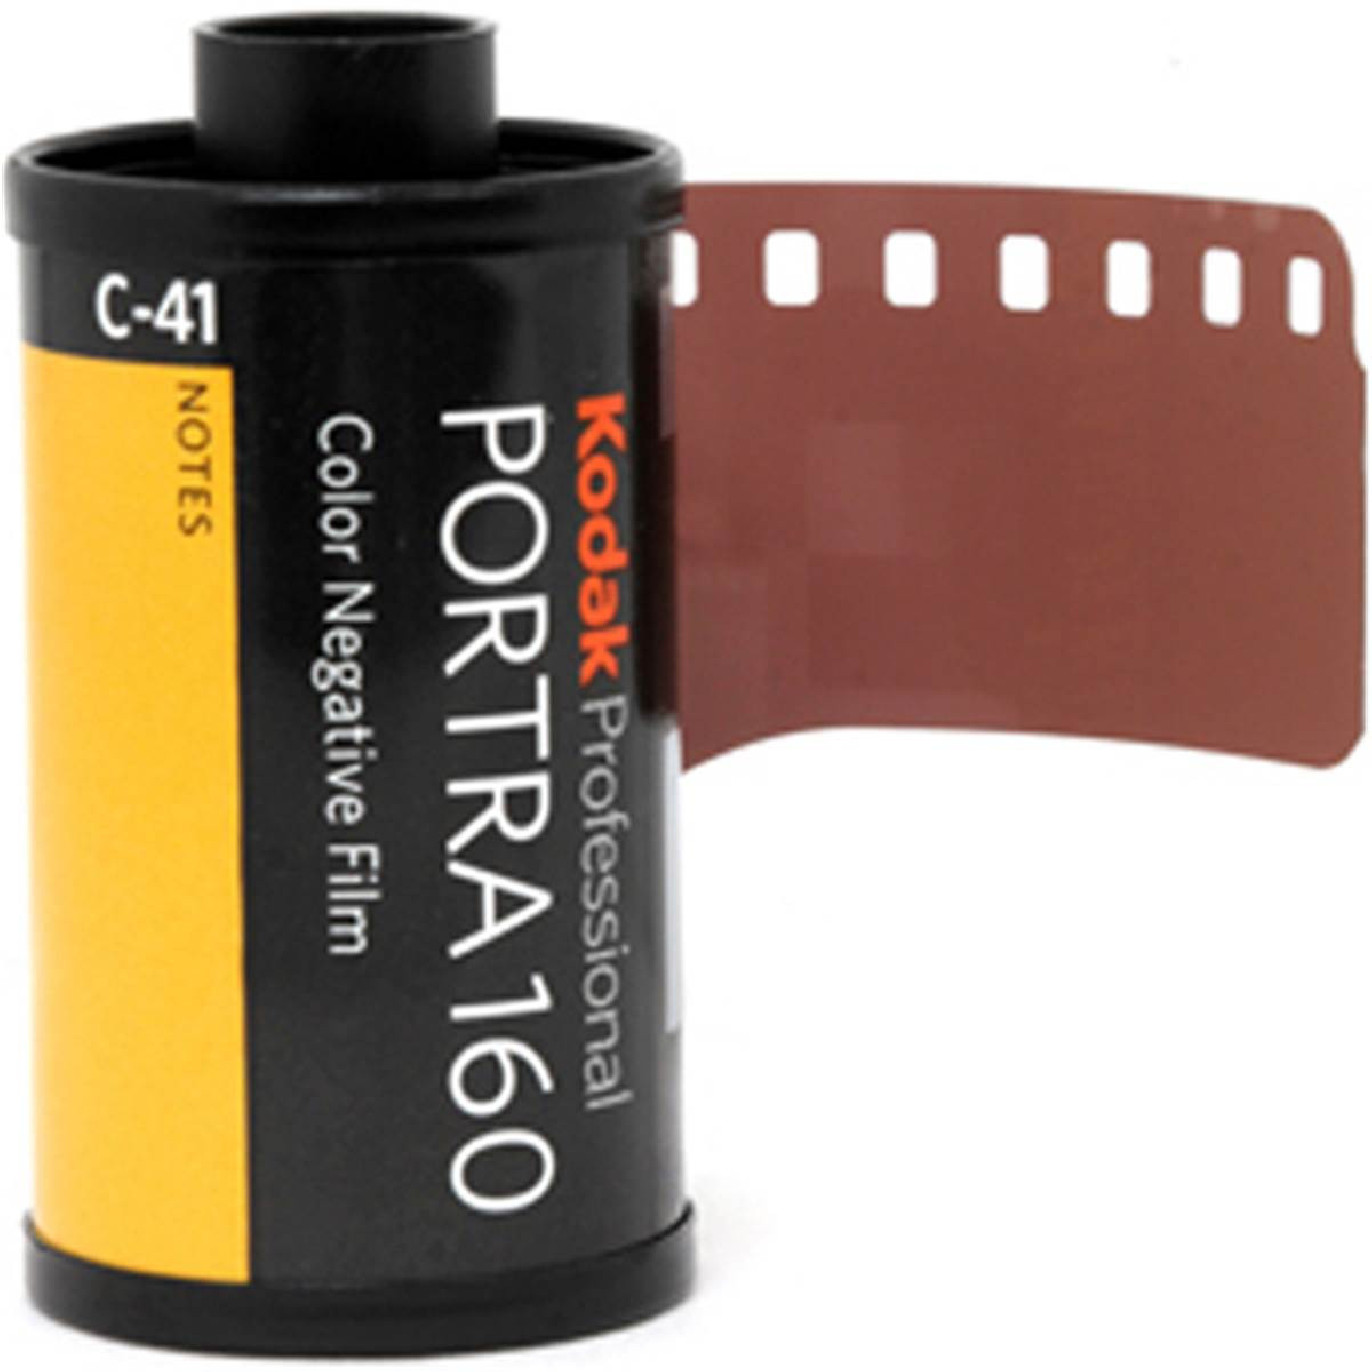 Kodak PORTRA 160, 135/36 (reconditionné) : Pellicule photo couleur  professionnelle